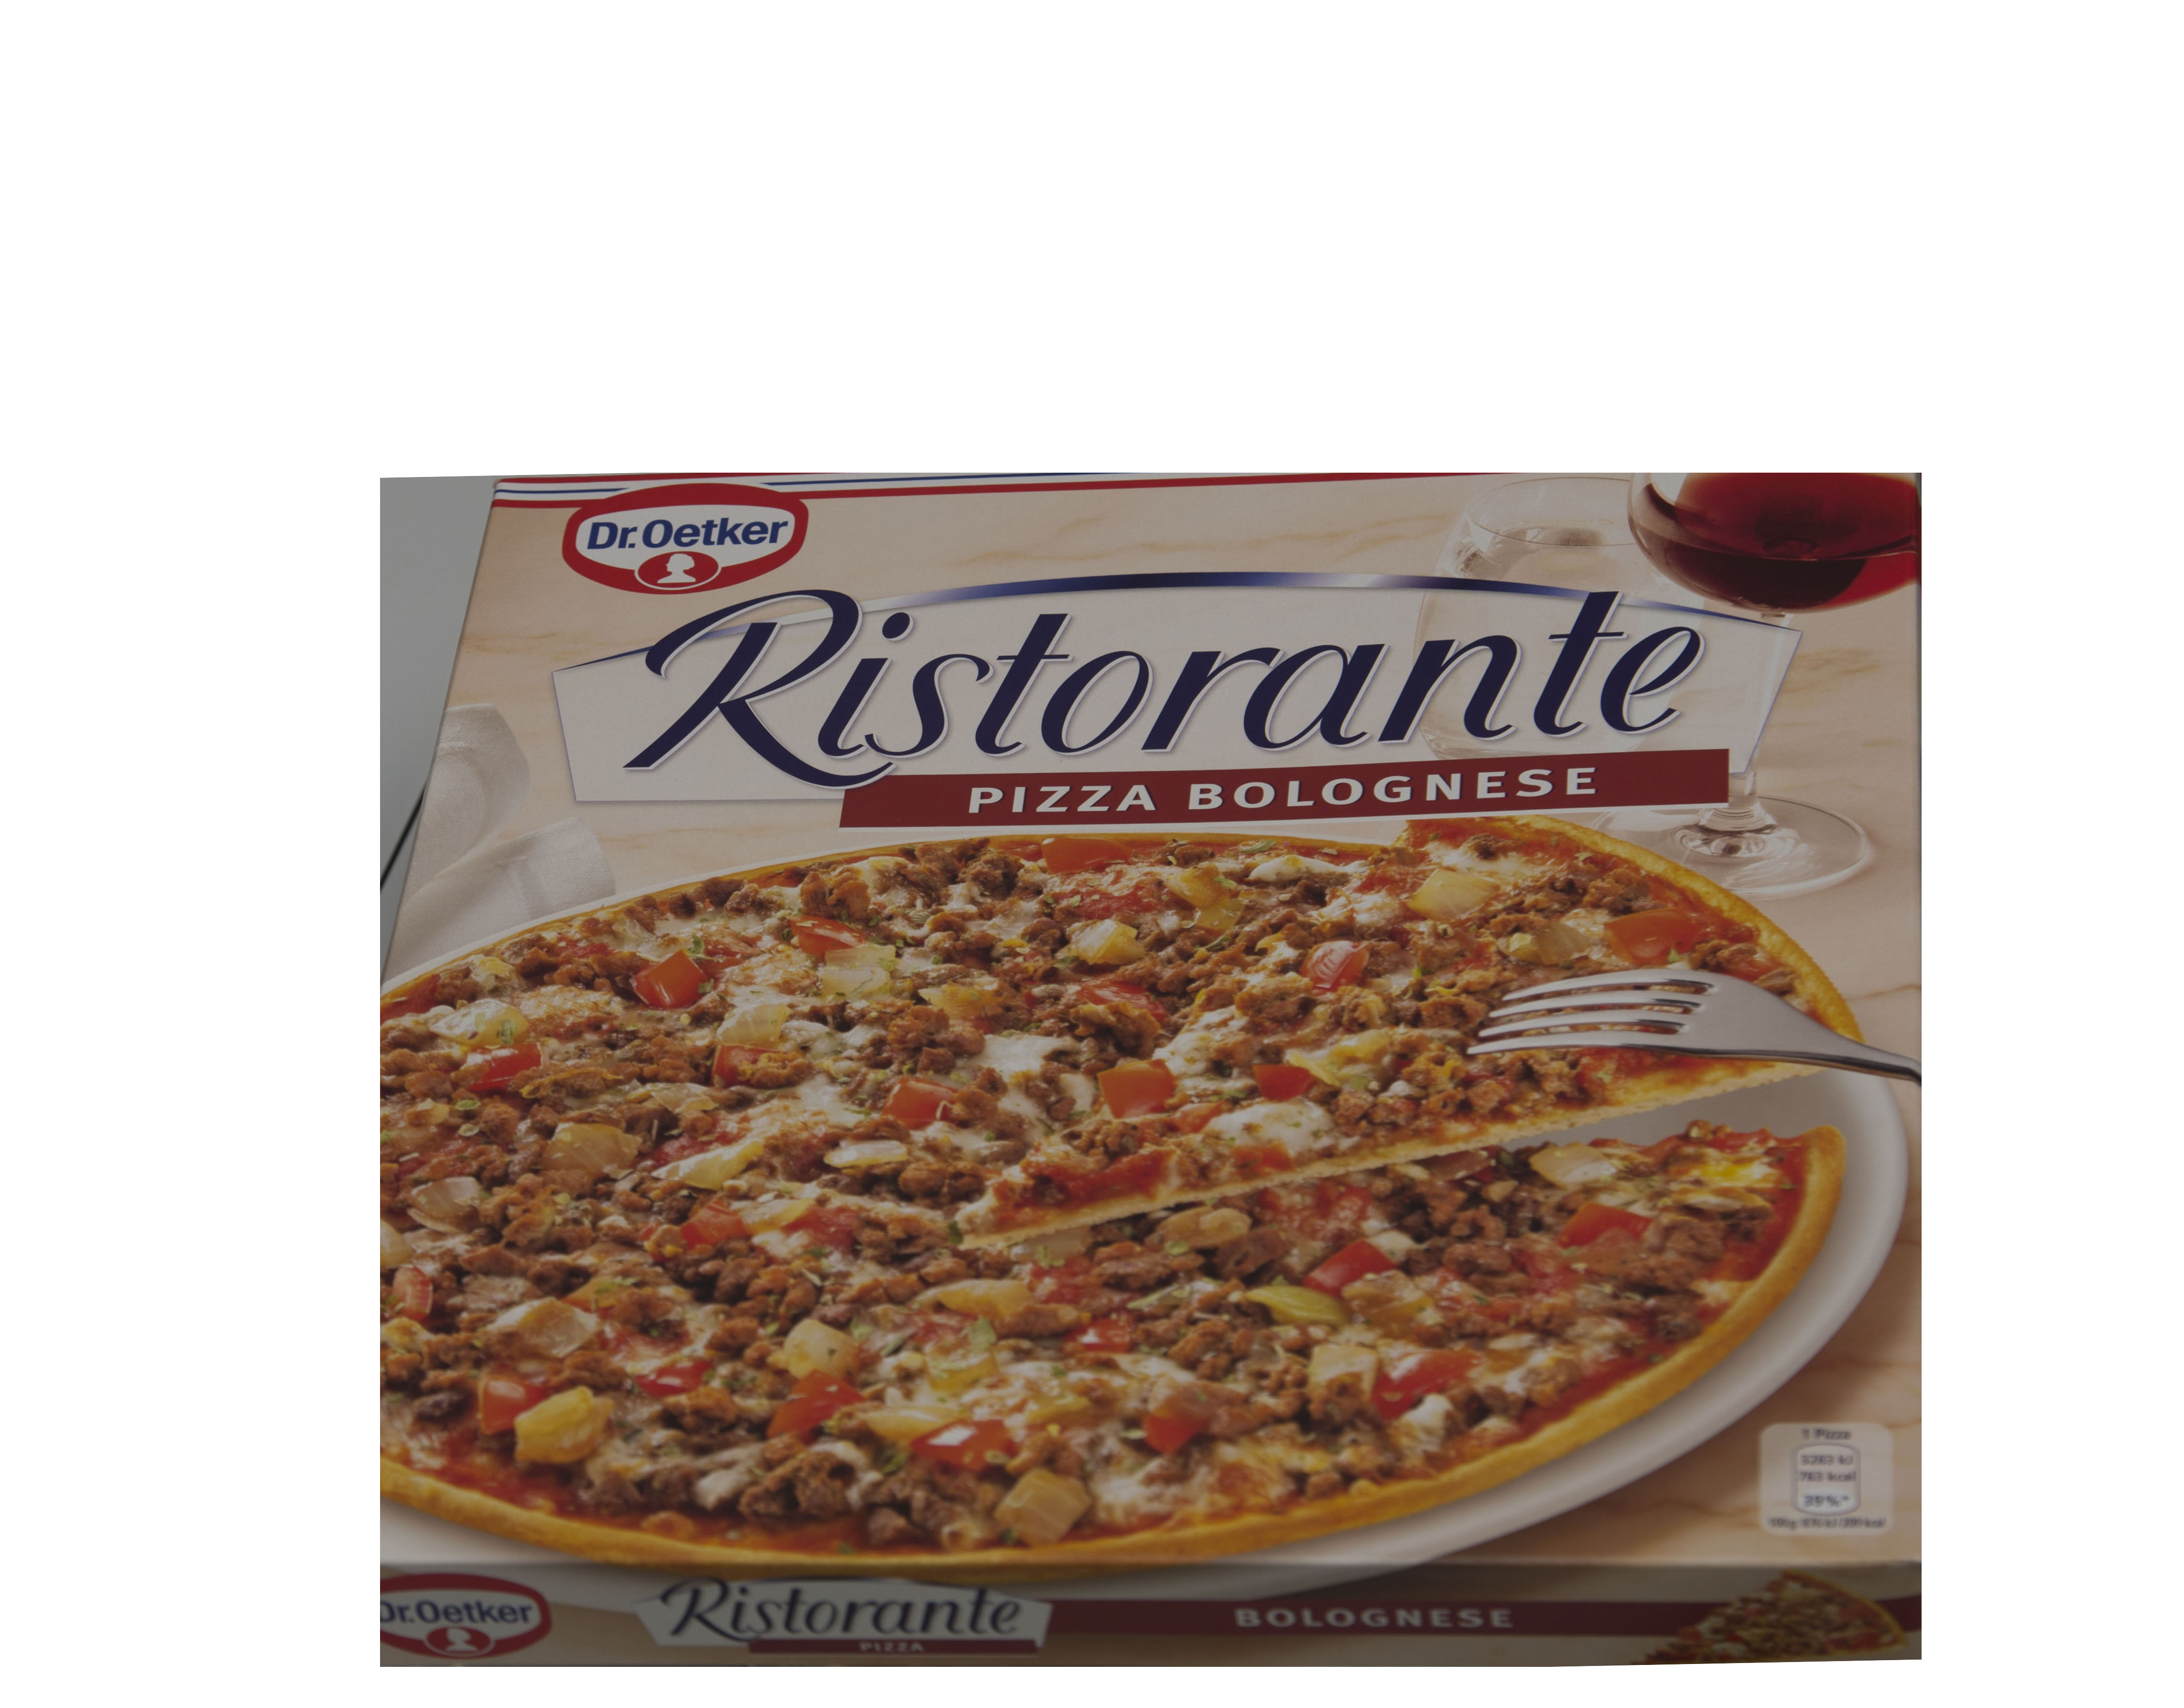 челентано пицца рецепт фото 104